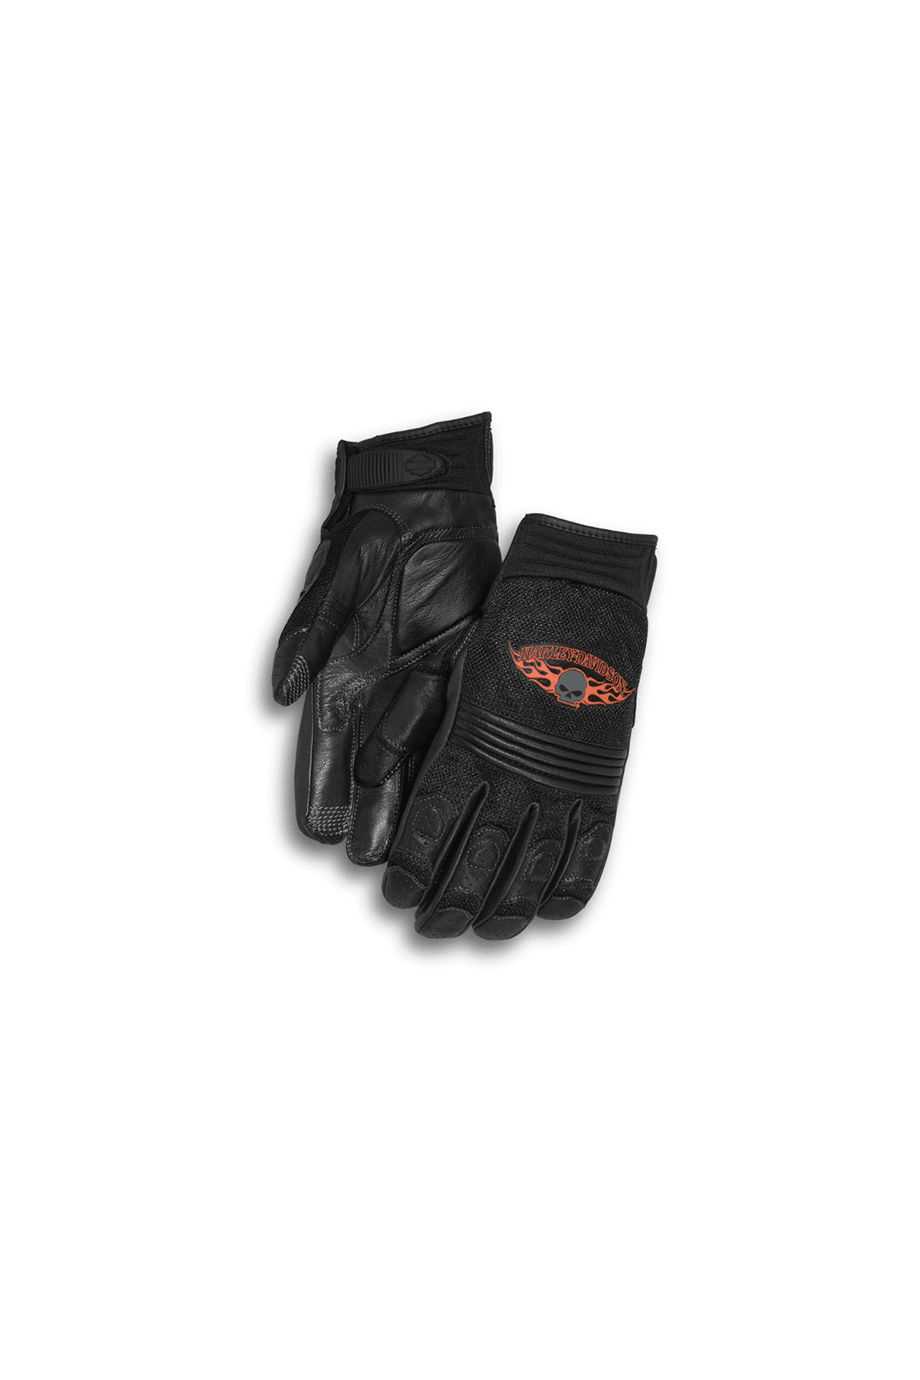 Harley-Davidson® Men's Skull Touchscreen Tech Gloves